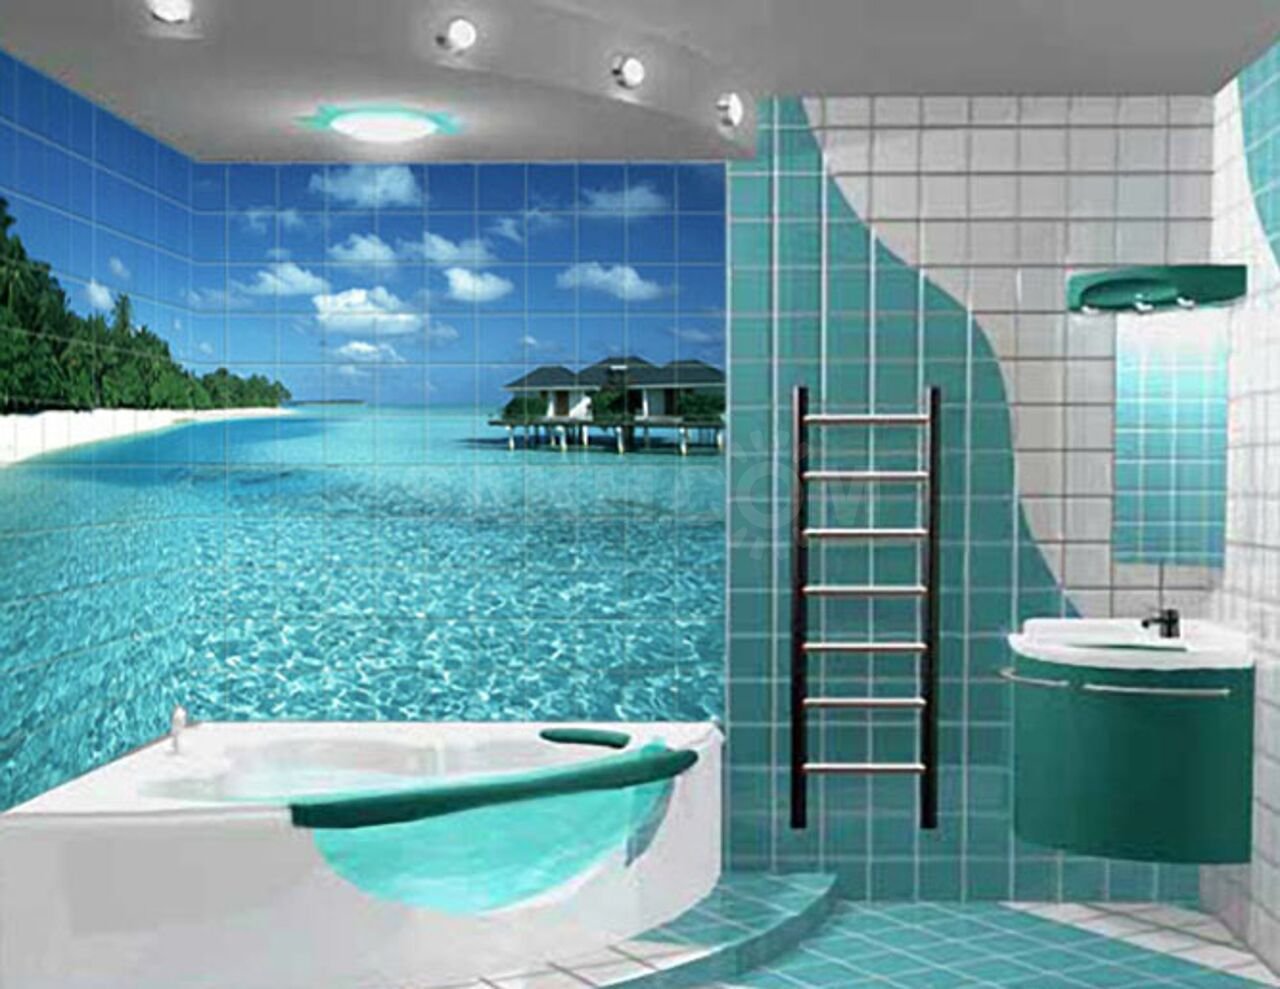 ванная комната в стиле пляжа